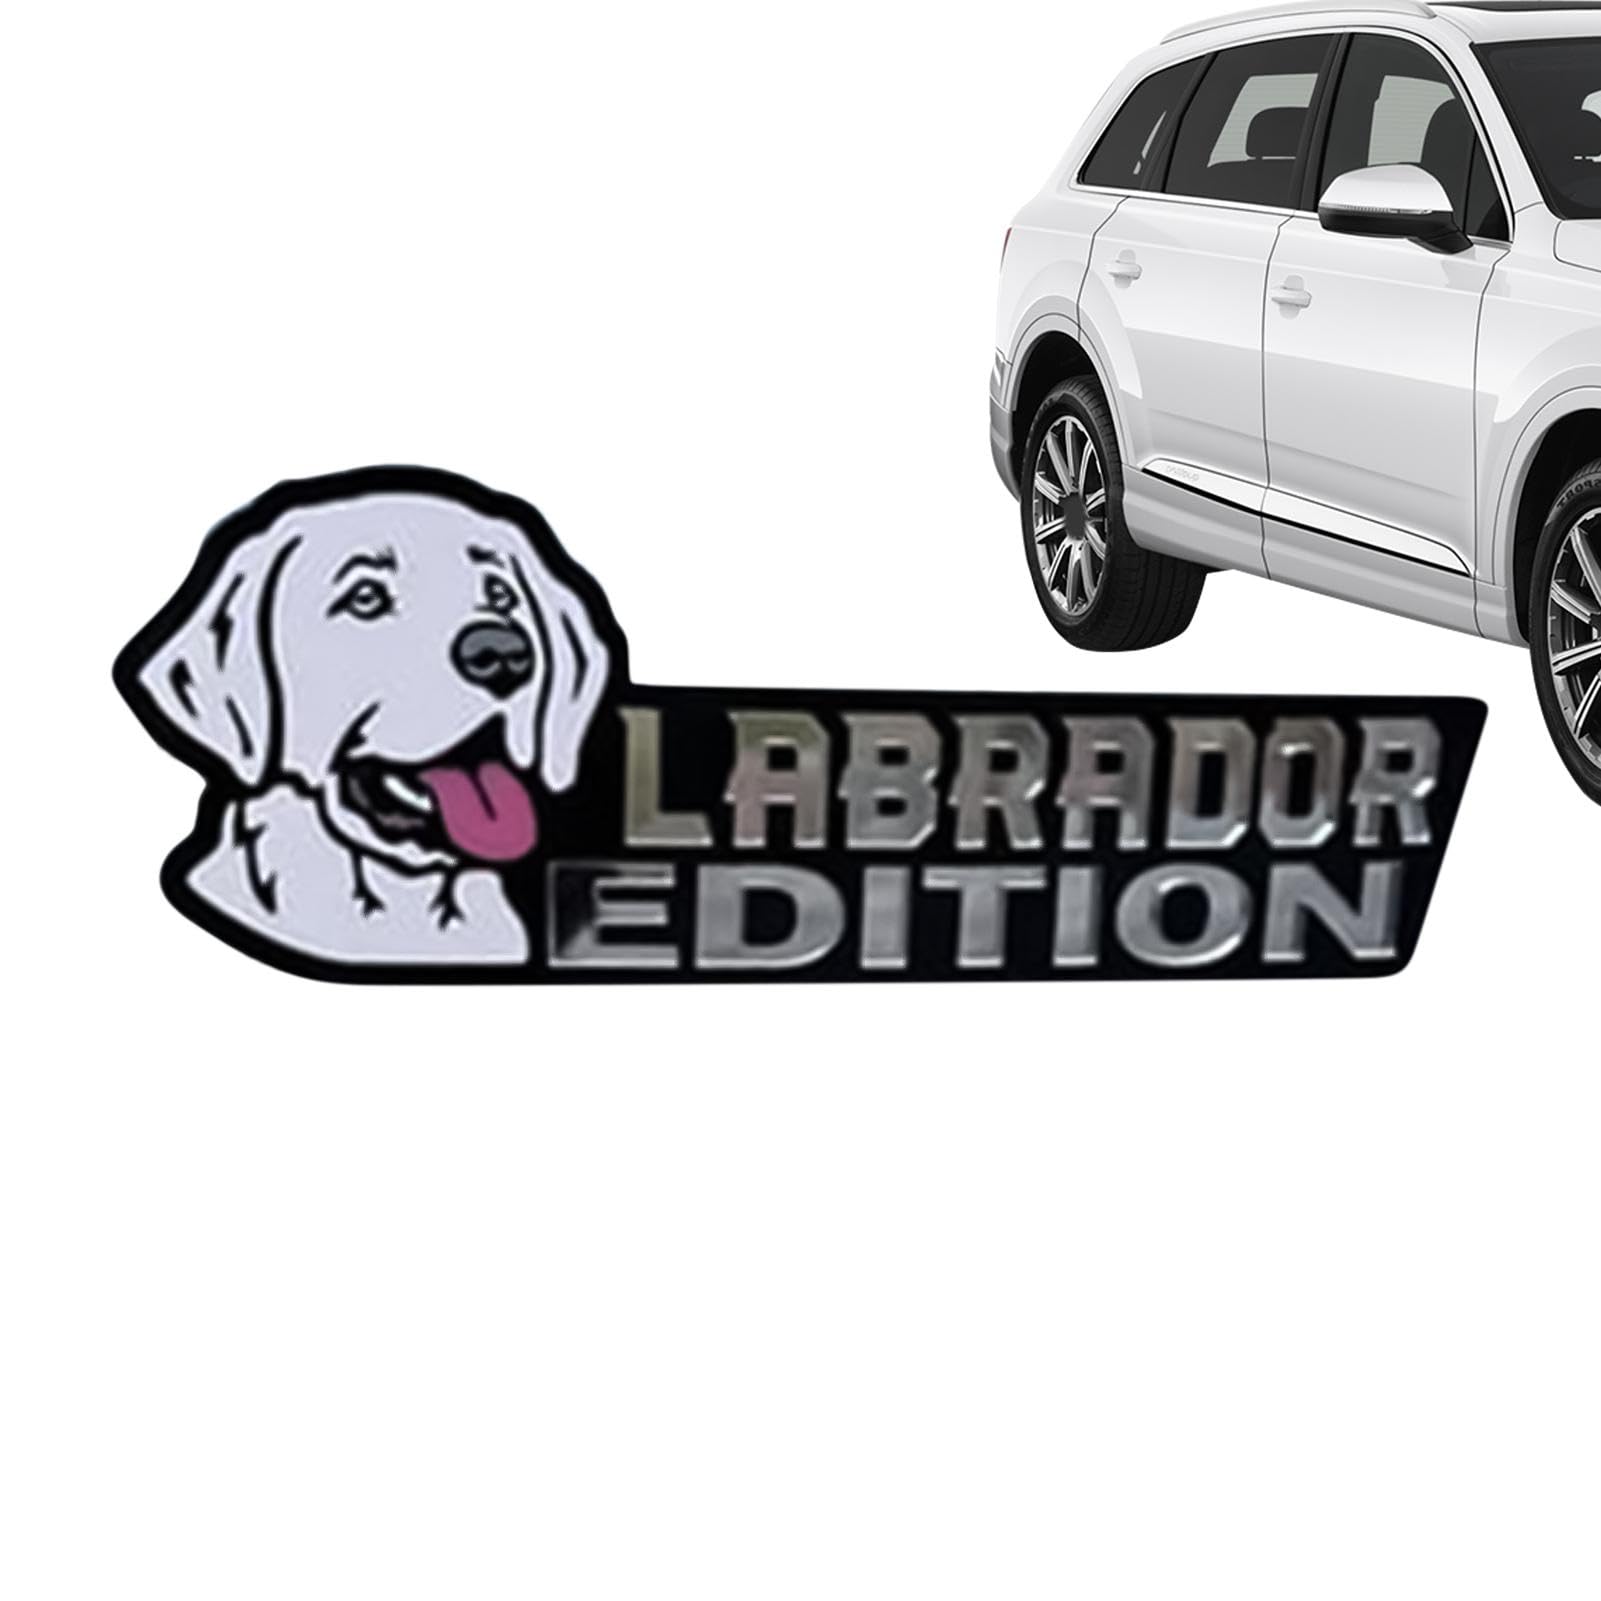 Maciun Dog Edition Autoabzeichen | 3D-Hundeabzeichen – Acryl-Abzeichen Aufkleber für Auto, Auto-Aufkleber, Stoßstangenaufkleber, lustige Auto-Abzeichen für Außendekoration, Auto von Maciun